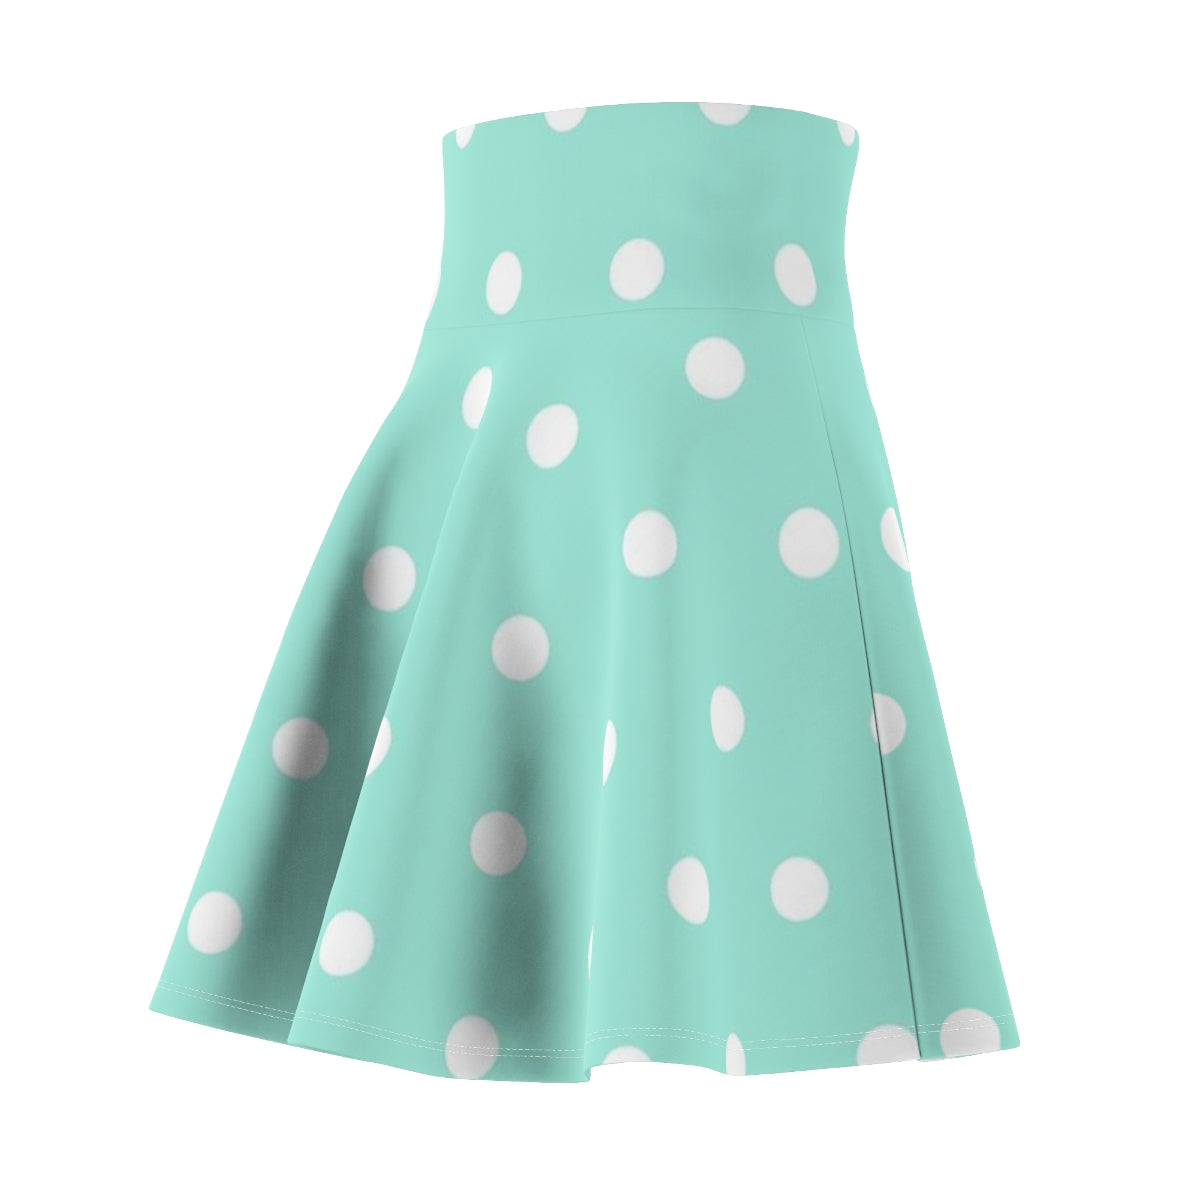 Women's Skater Skirt Green Polka Dot Print, Cute High Waist Skirt, Full Circle A Line Skirt